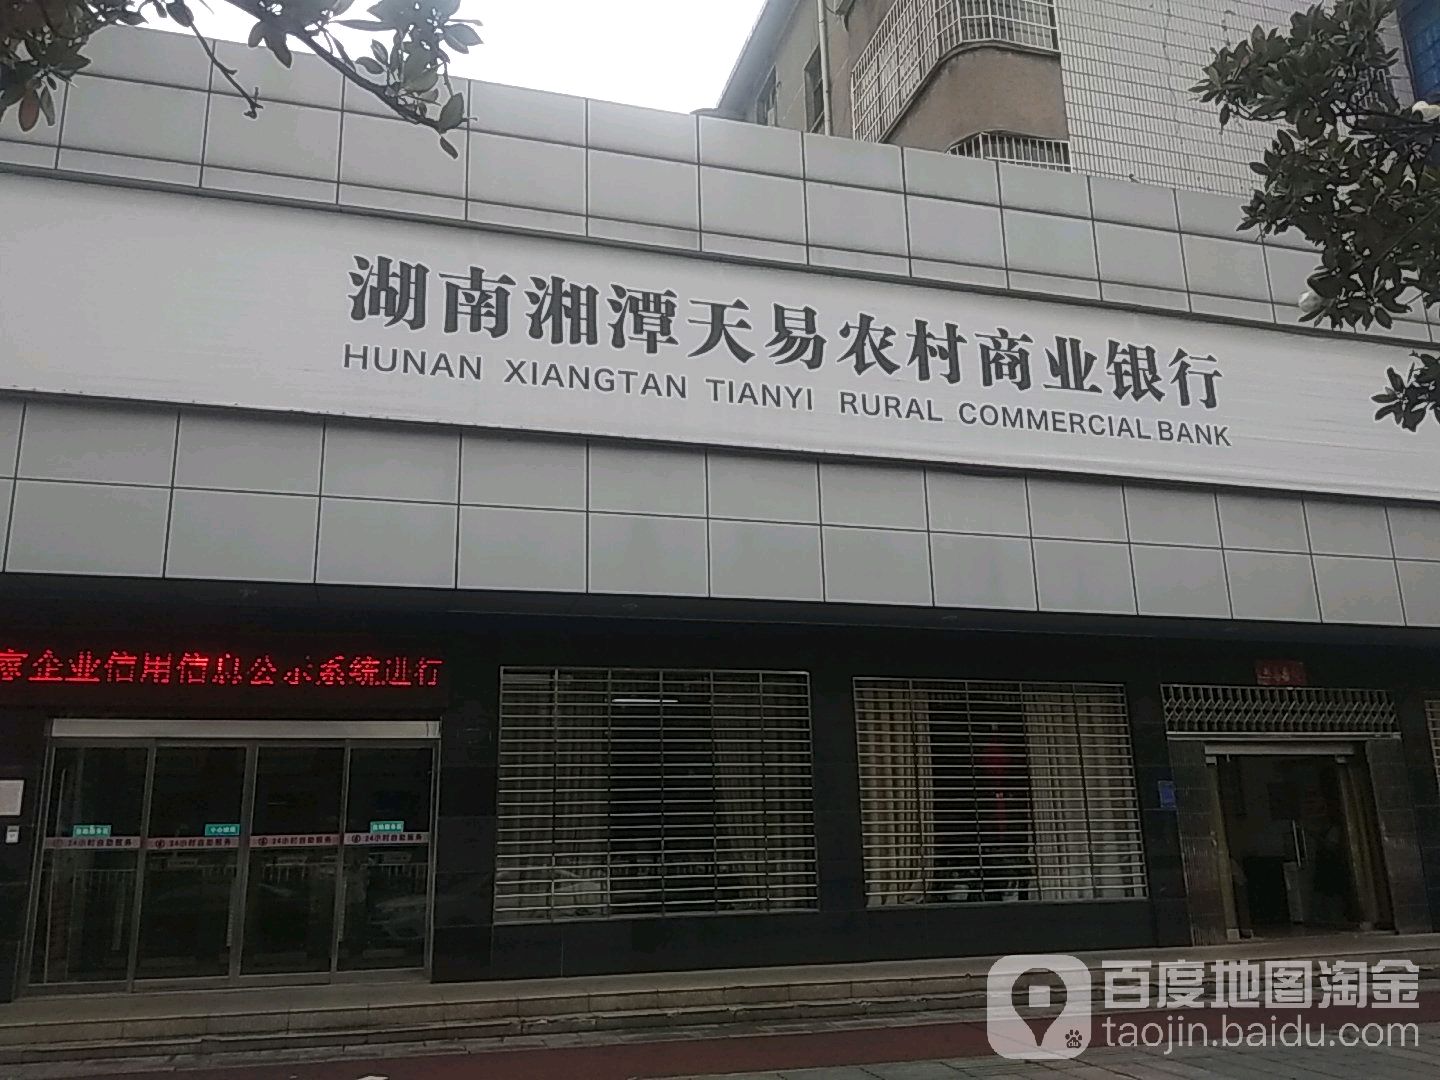 湘潭天易农村商商银行(易俗河支行)